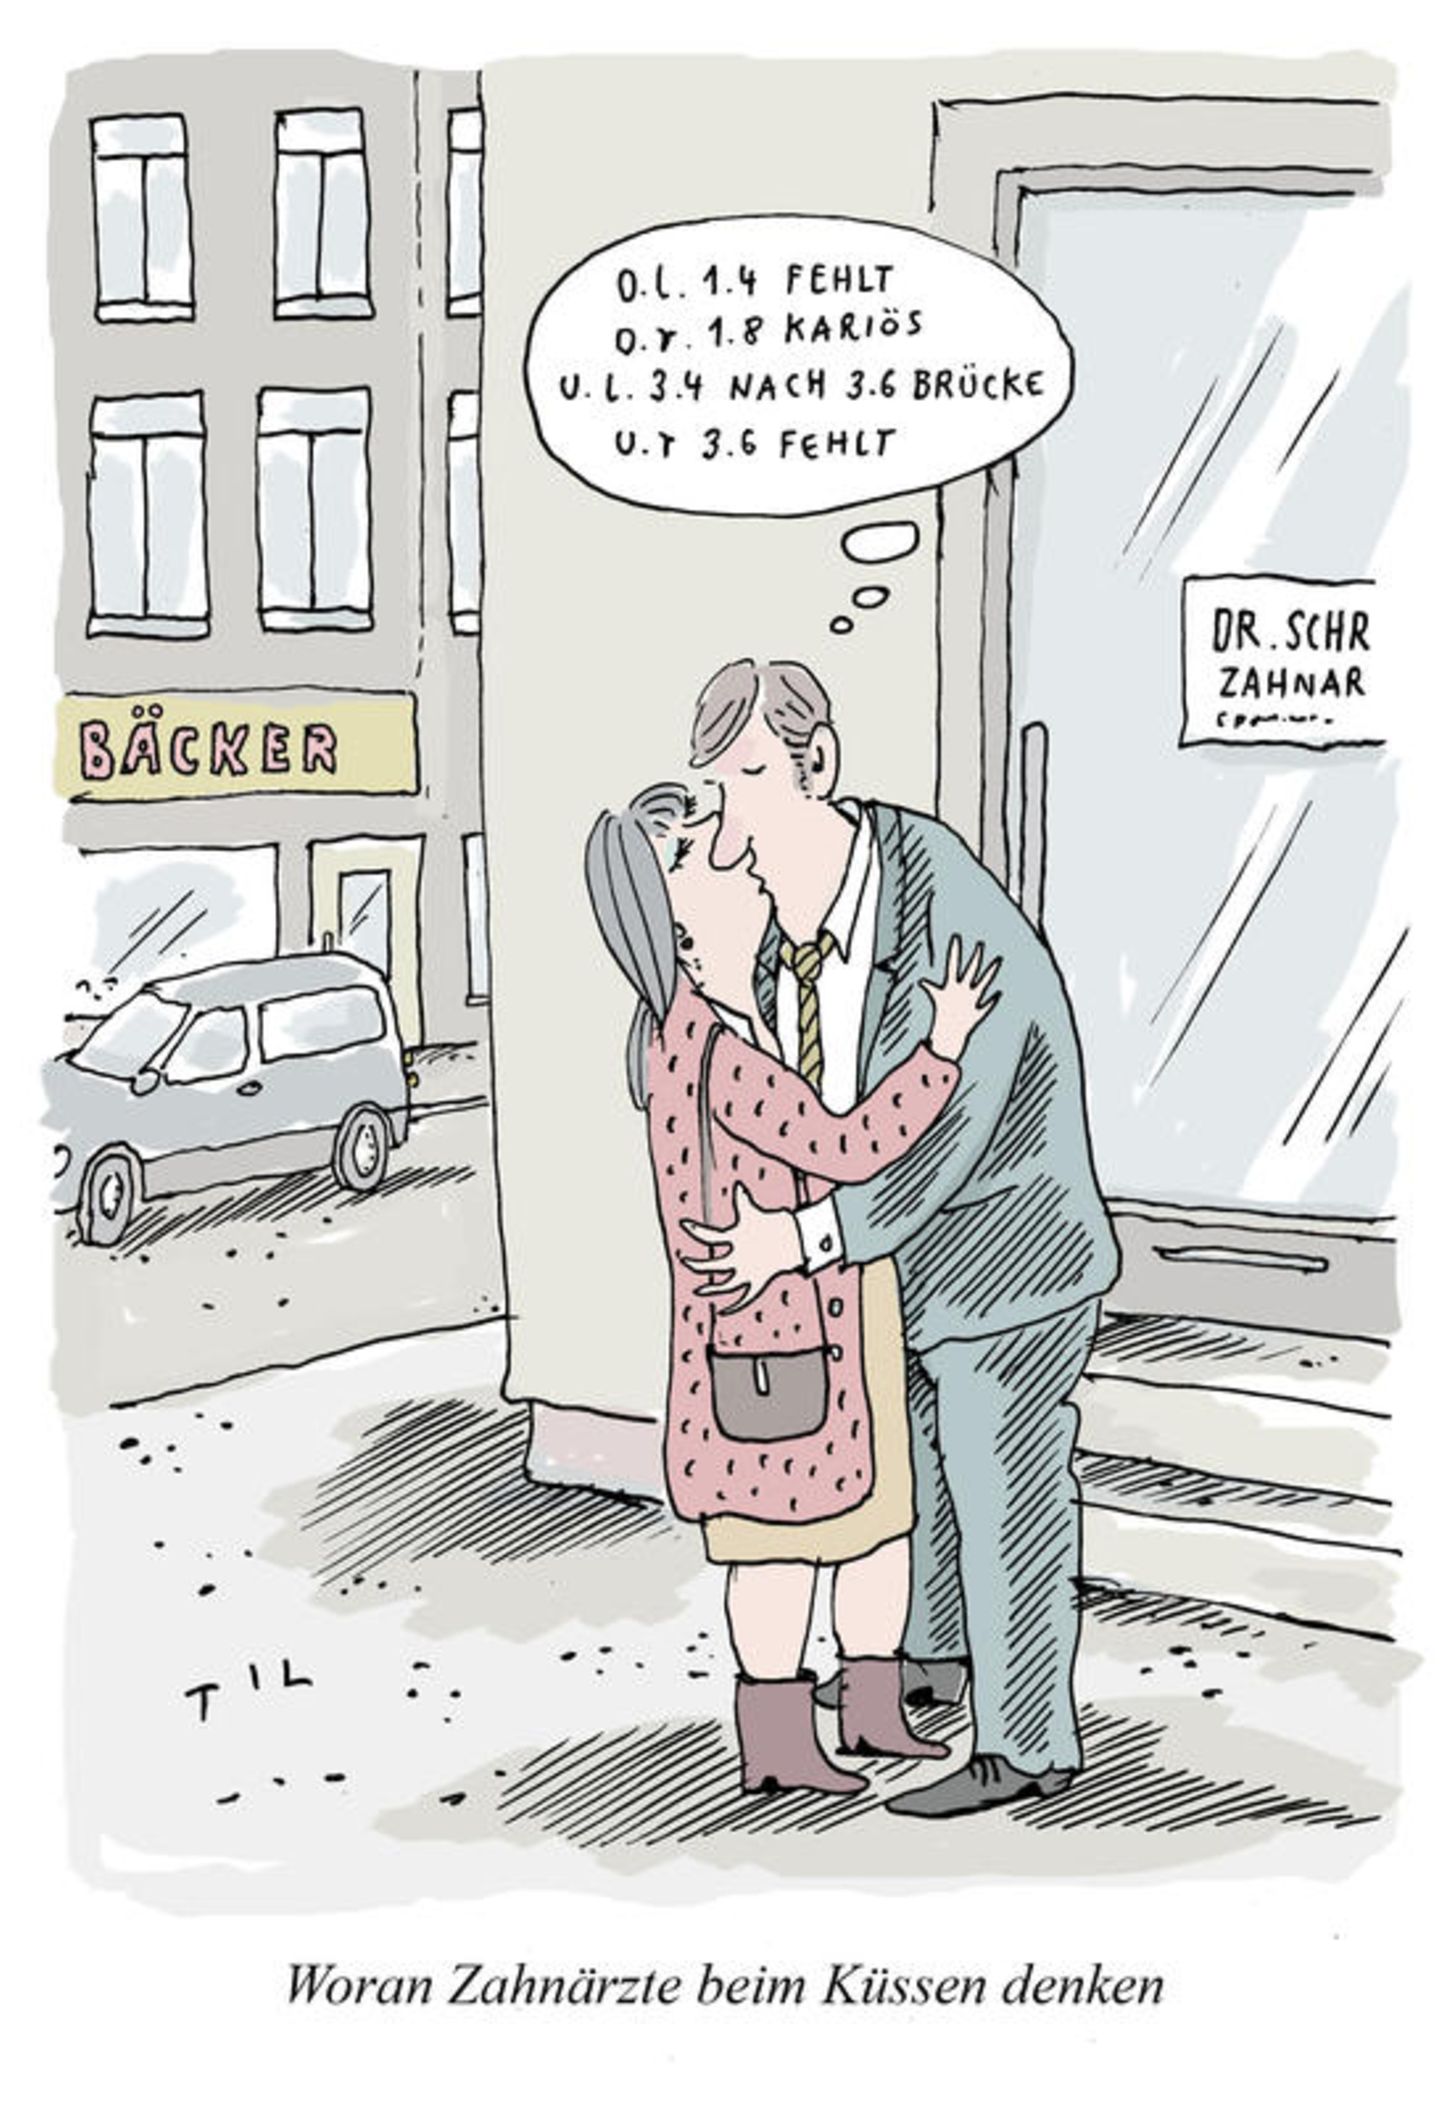 Valentinstag Die Besten Cartoons Zum Tag Der Liebe Stern De